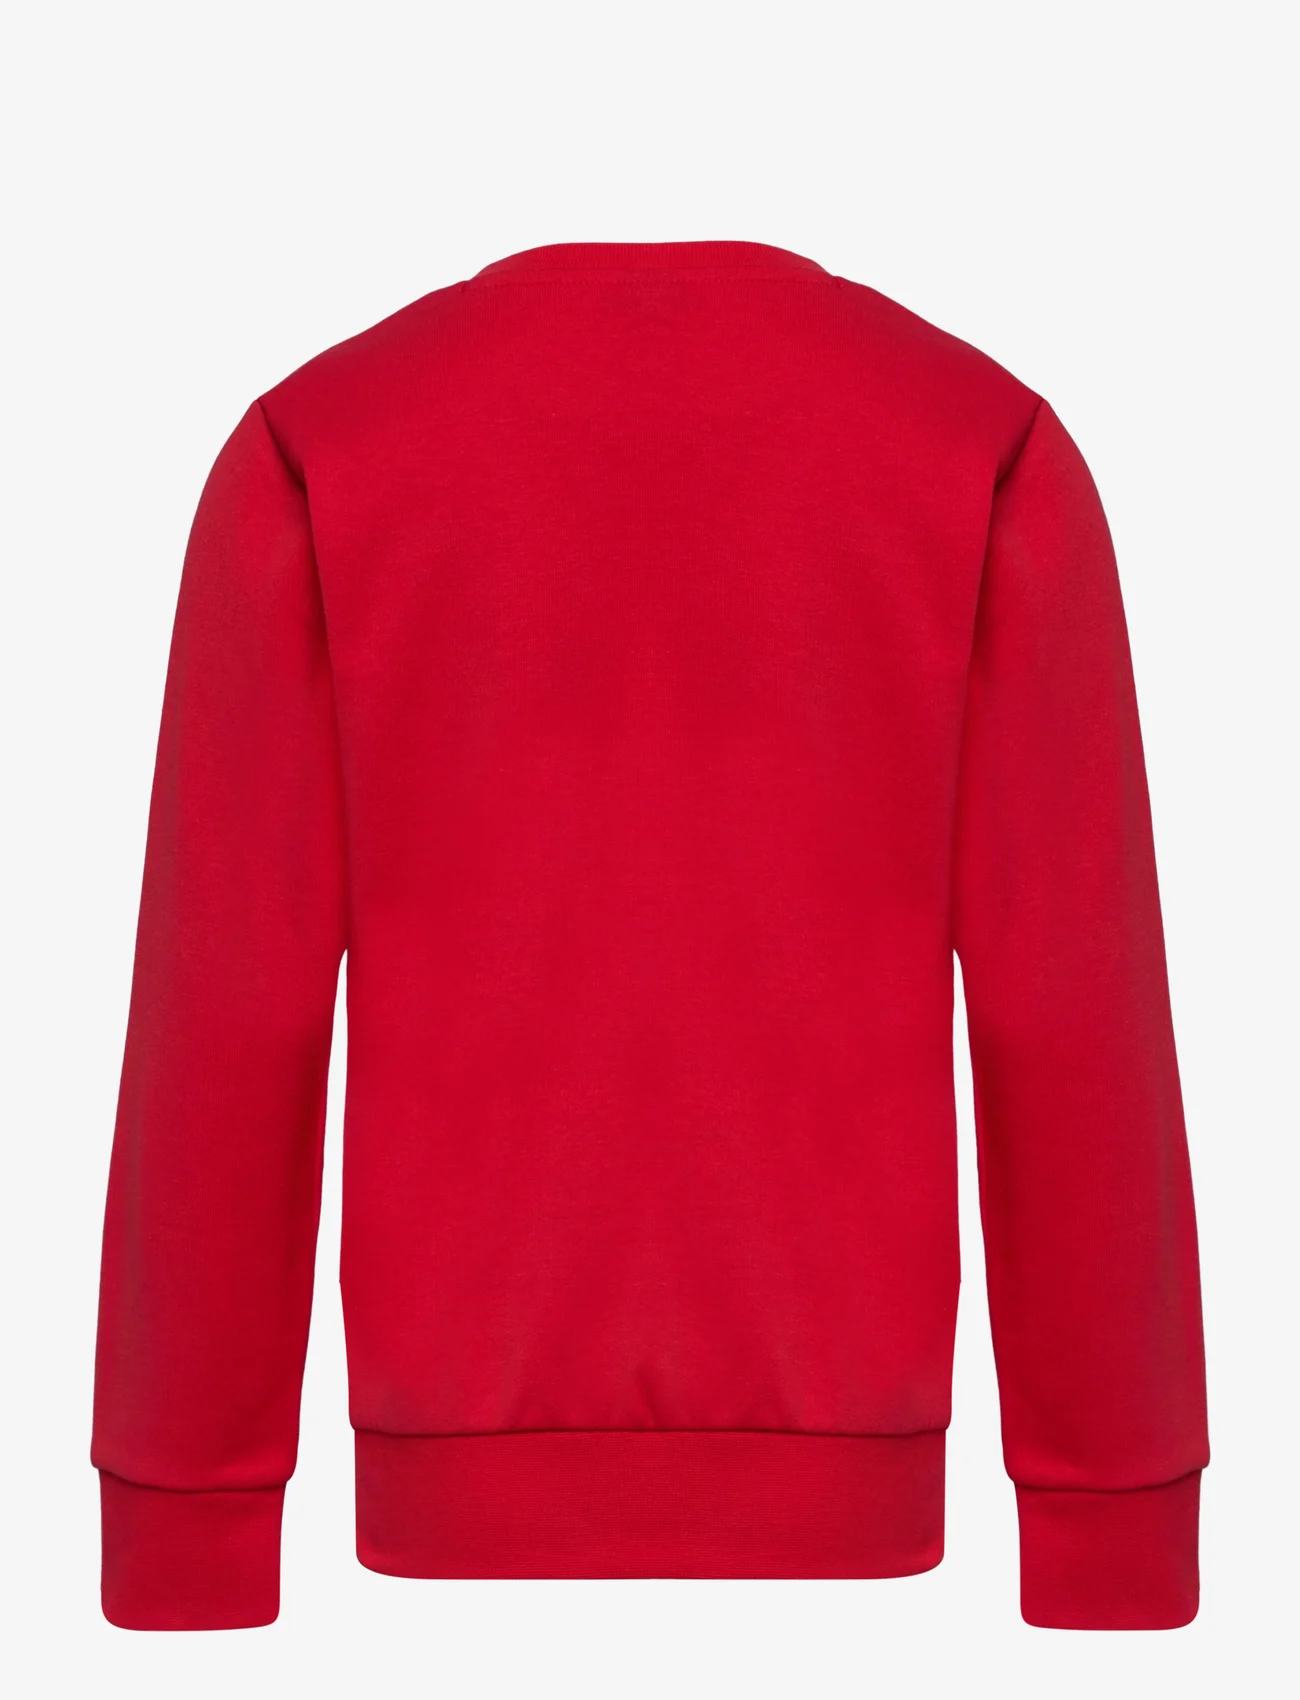 Champion - Crewneck Sweatshirt - laveste priser - true red - 1